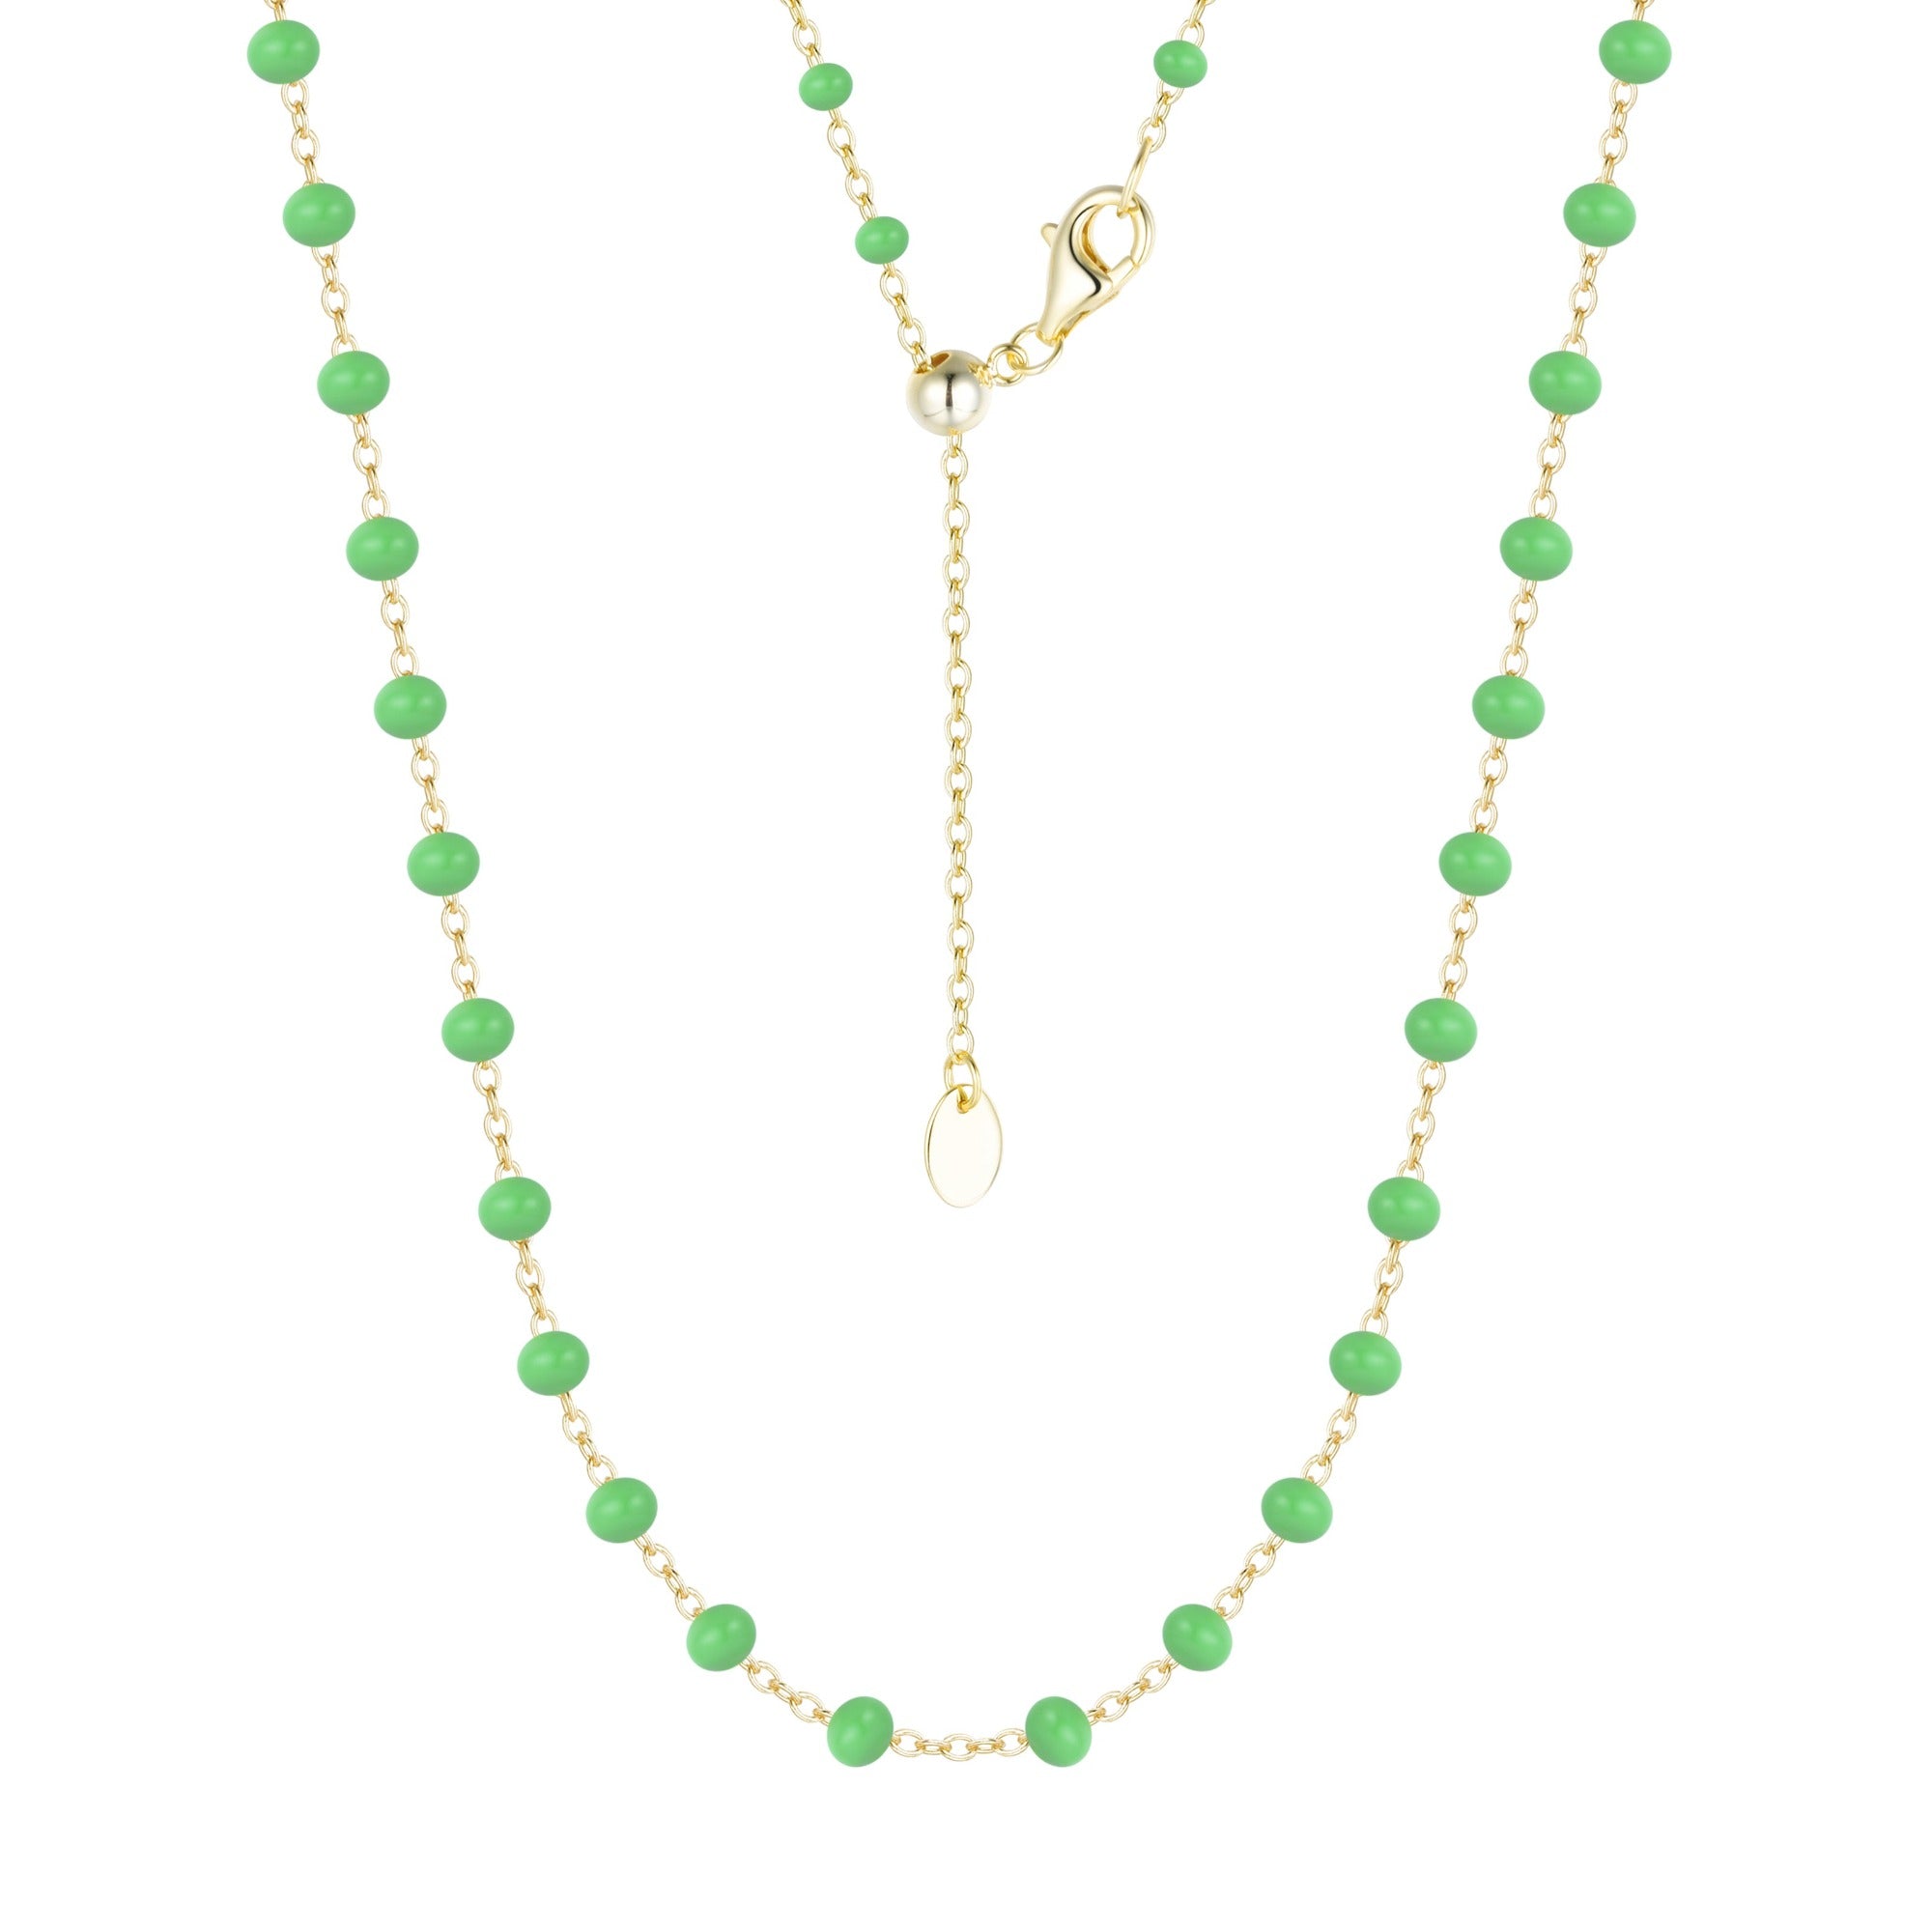 enamel beaded chain necklace large kamaria turquoise